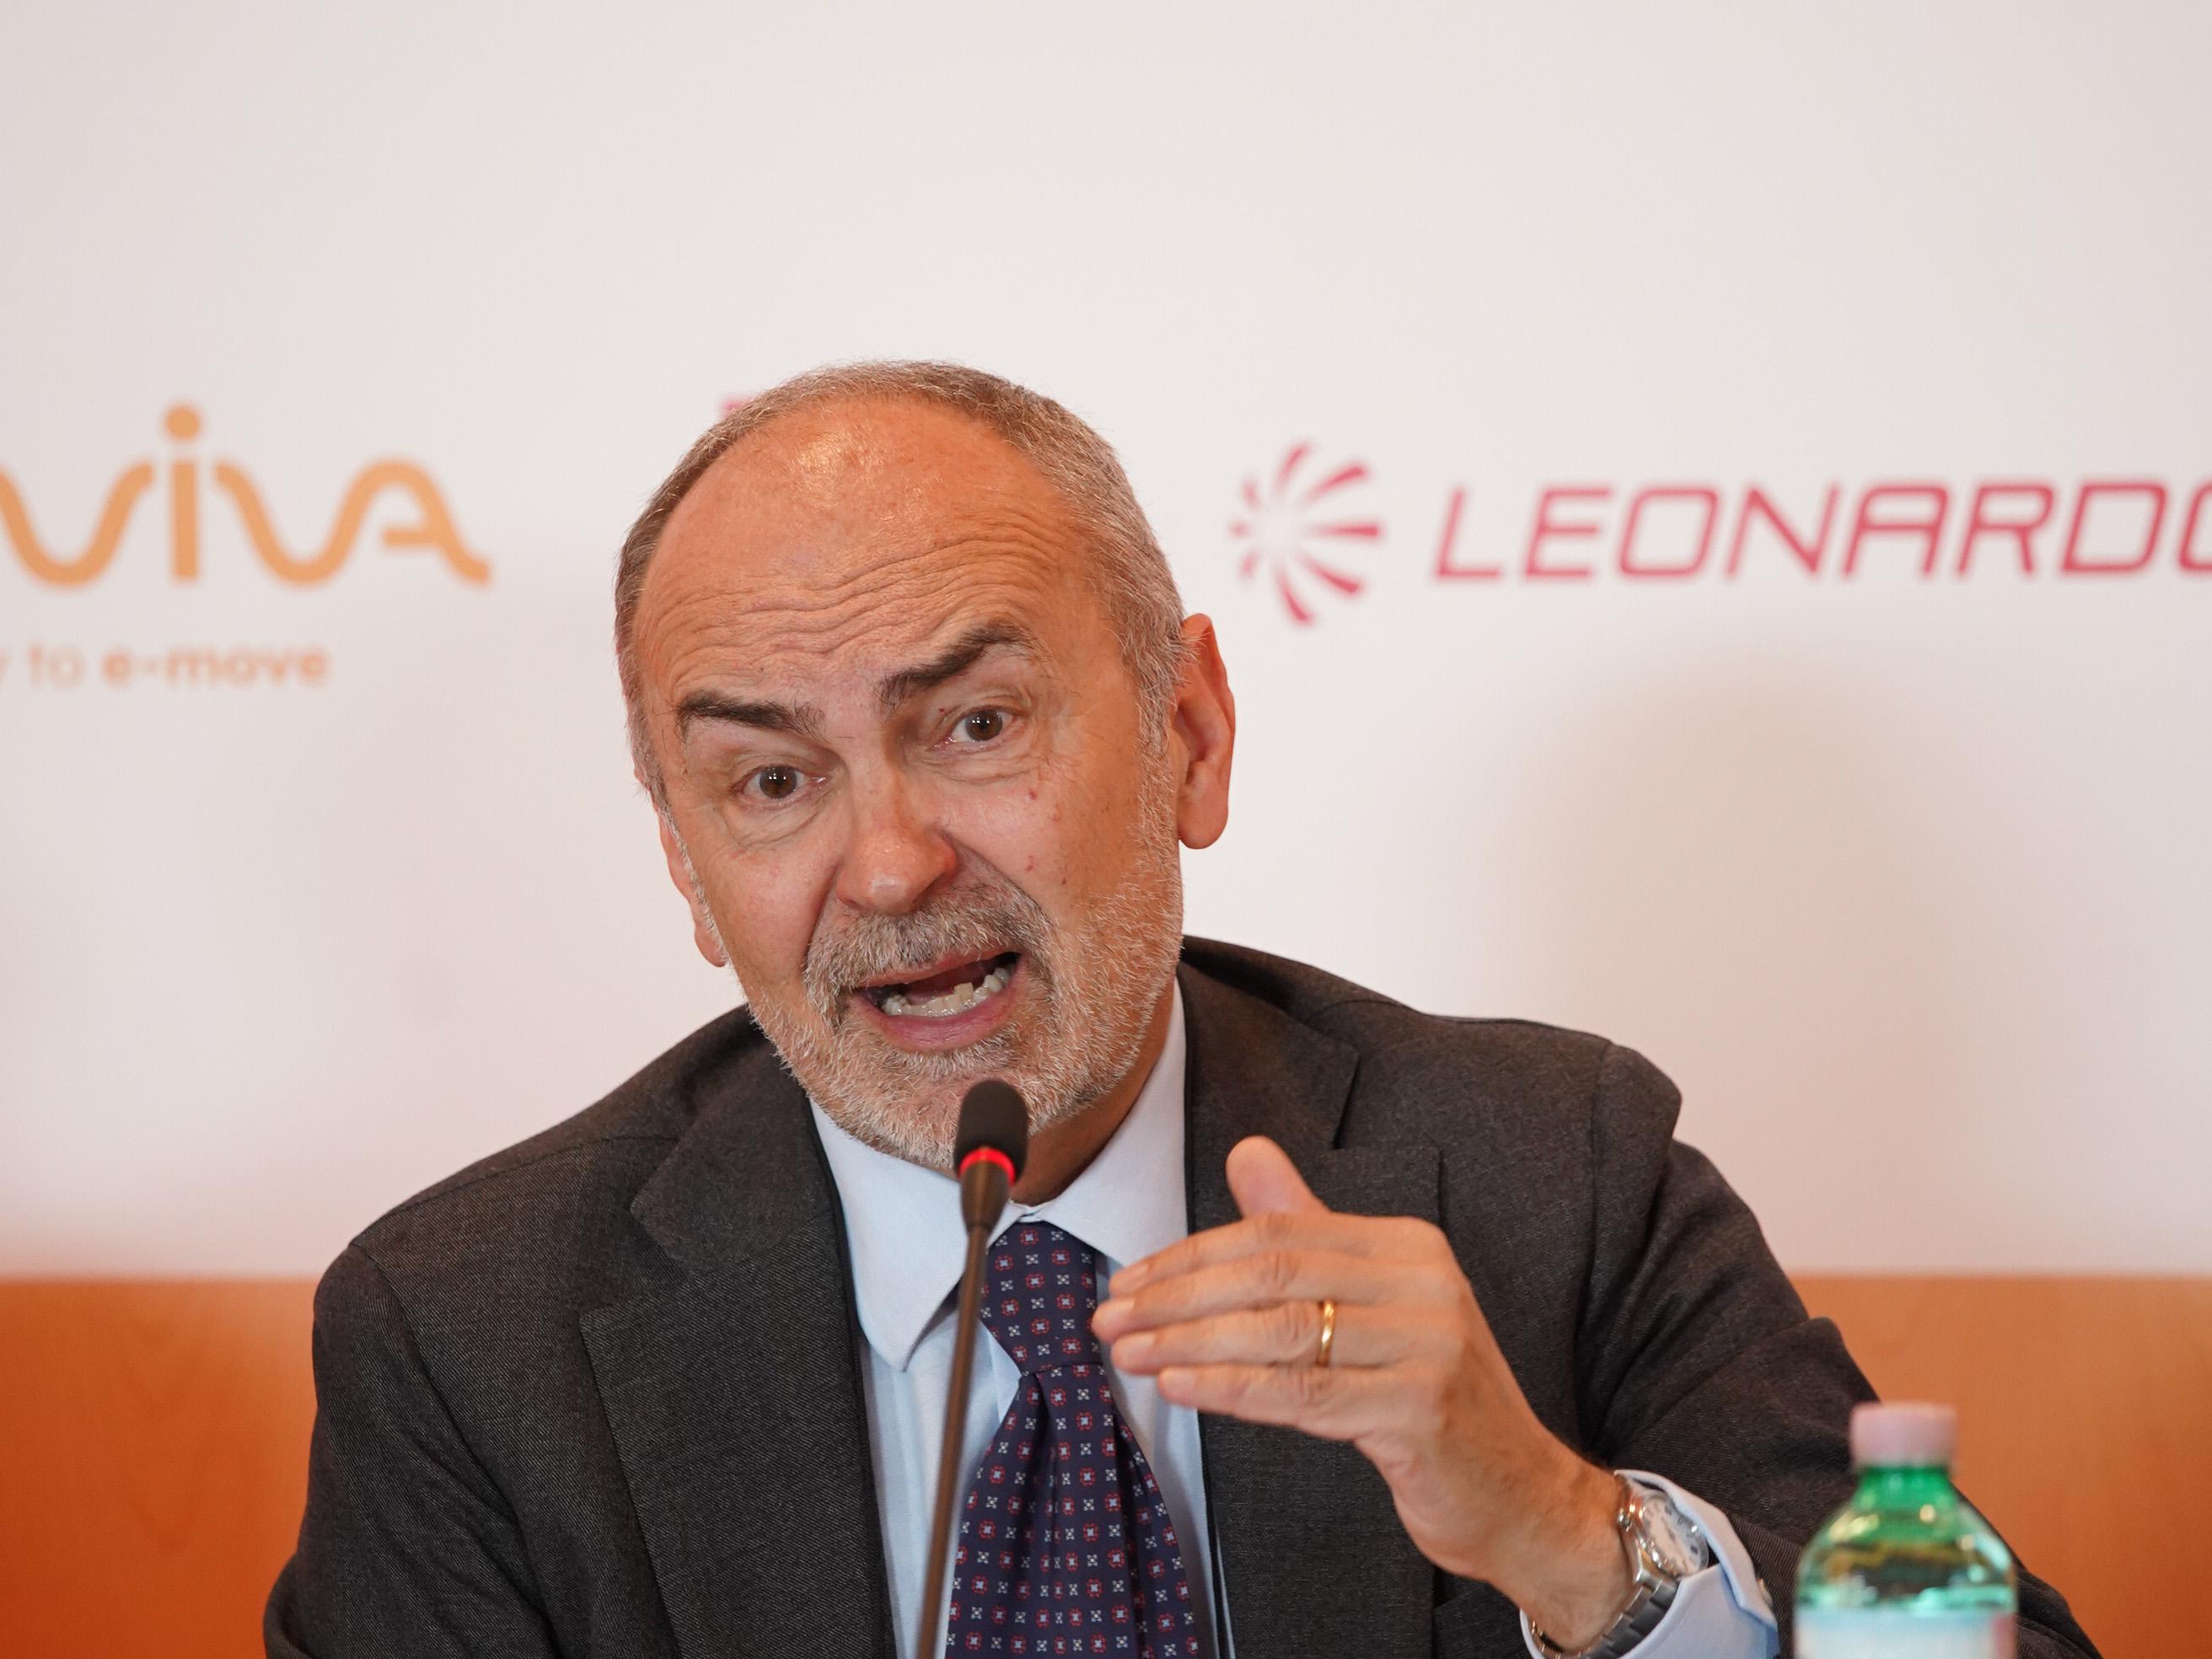 Filippo Bettini, Pirelli'nin kıdemli sürdürülebilirlik danışmanı